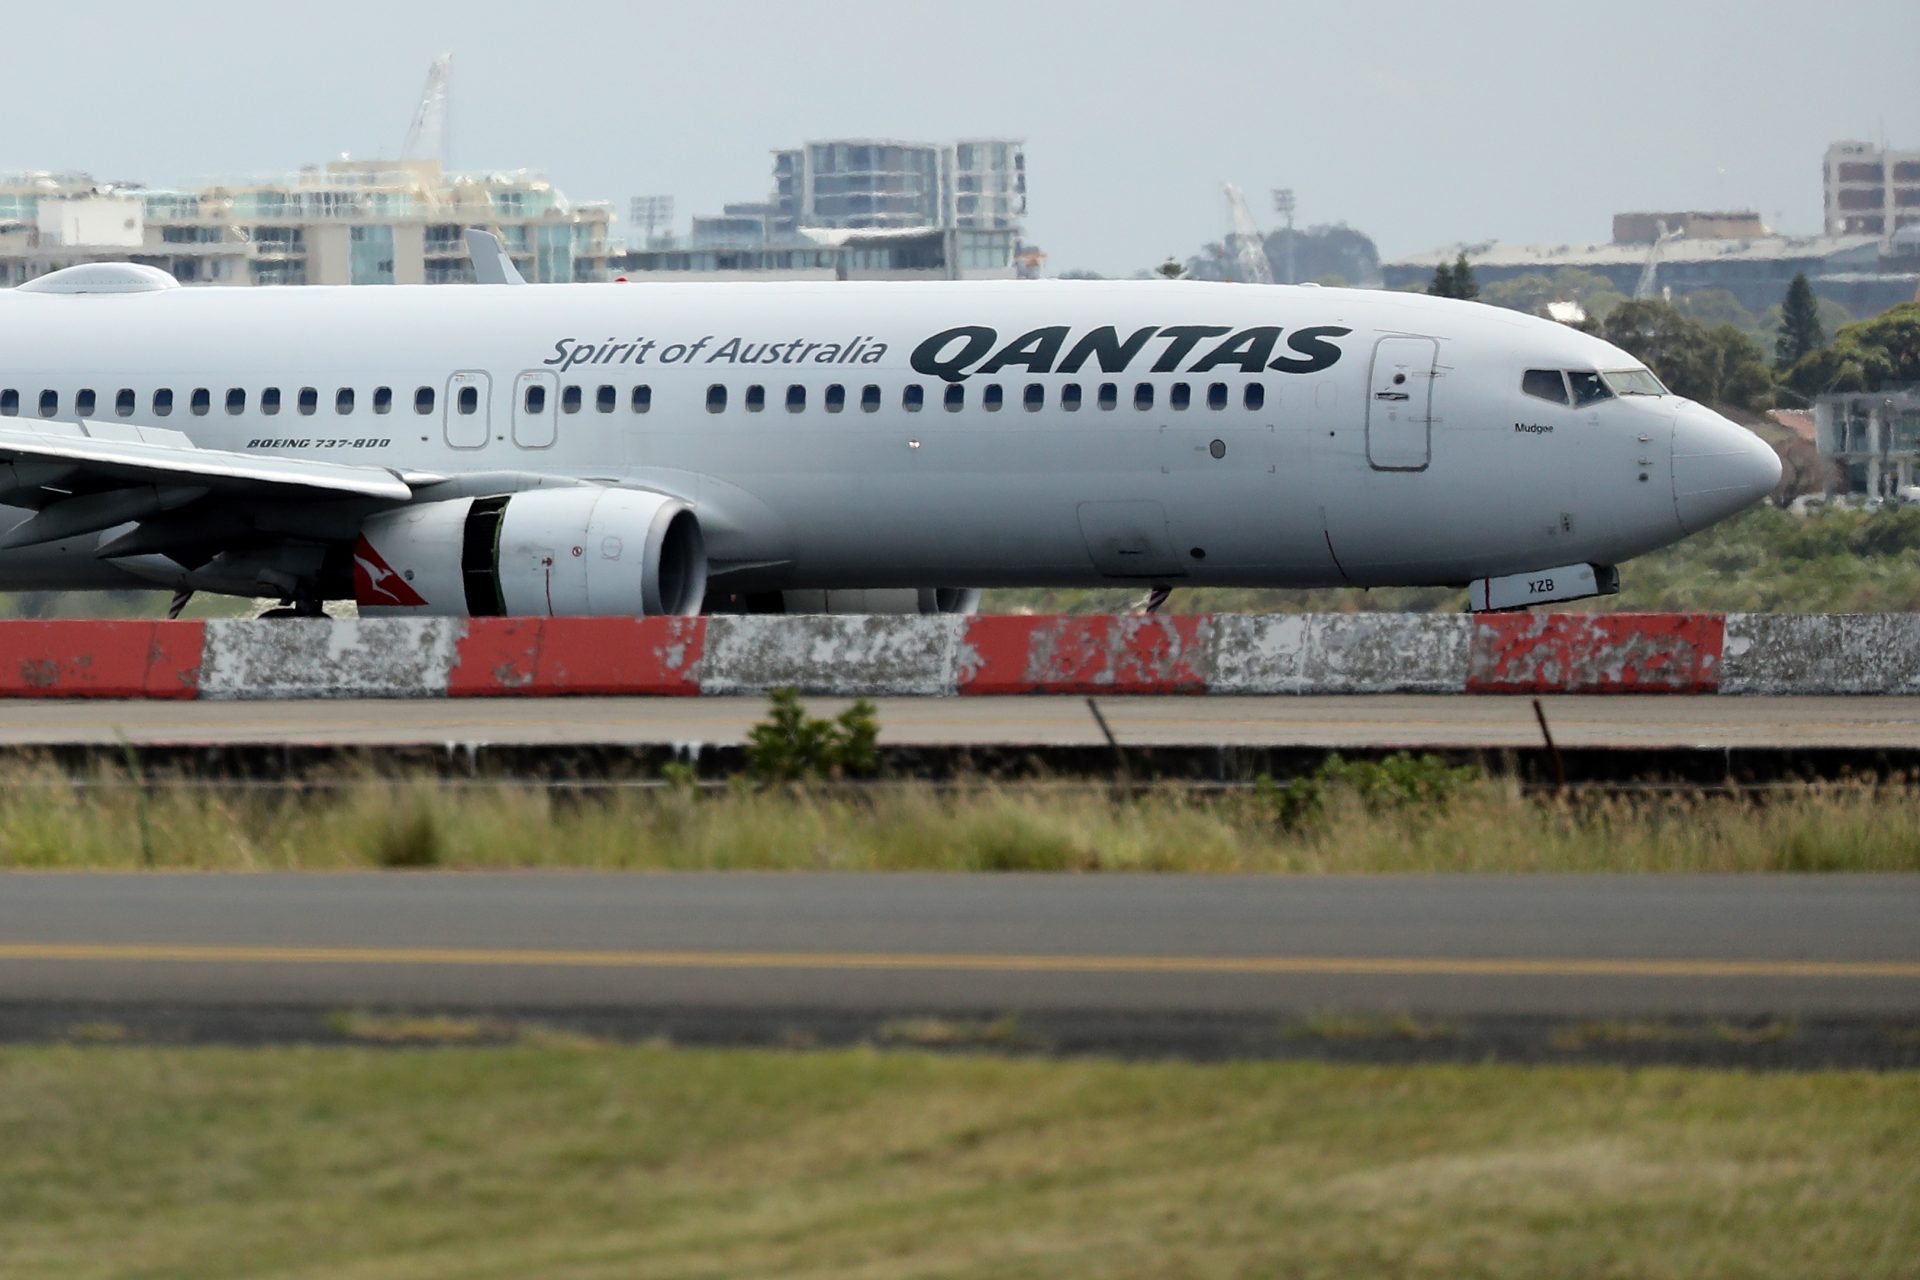 Un avión de Qantas registra un fallo técnico durante un vuelo, el tercero en 3 días